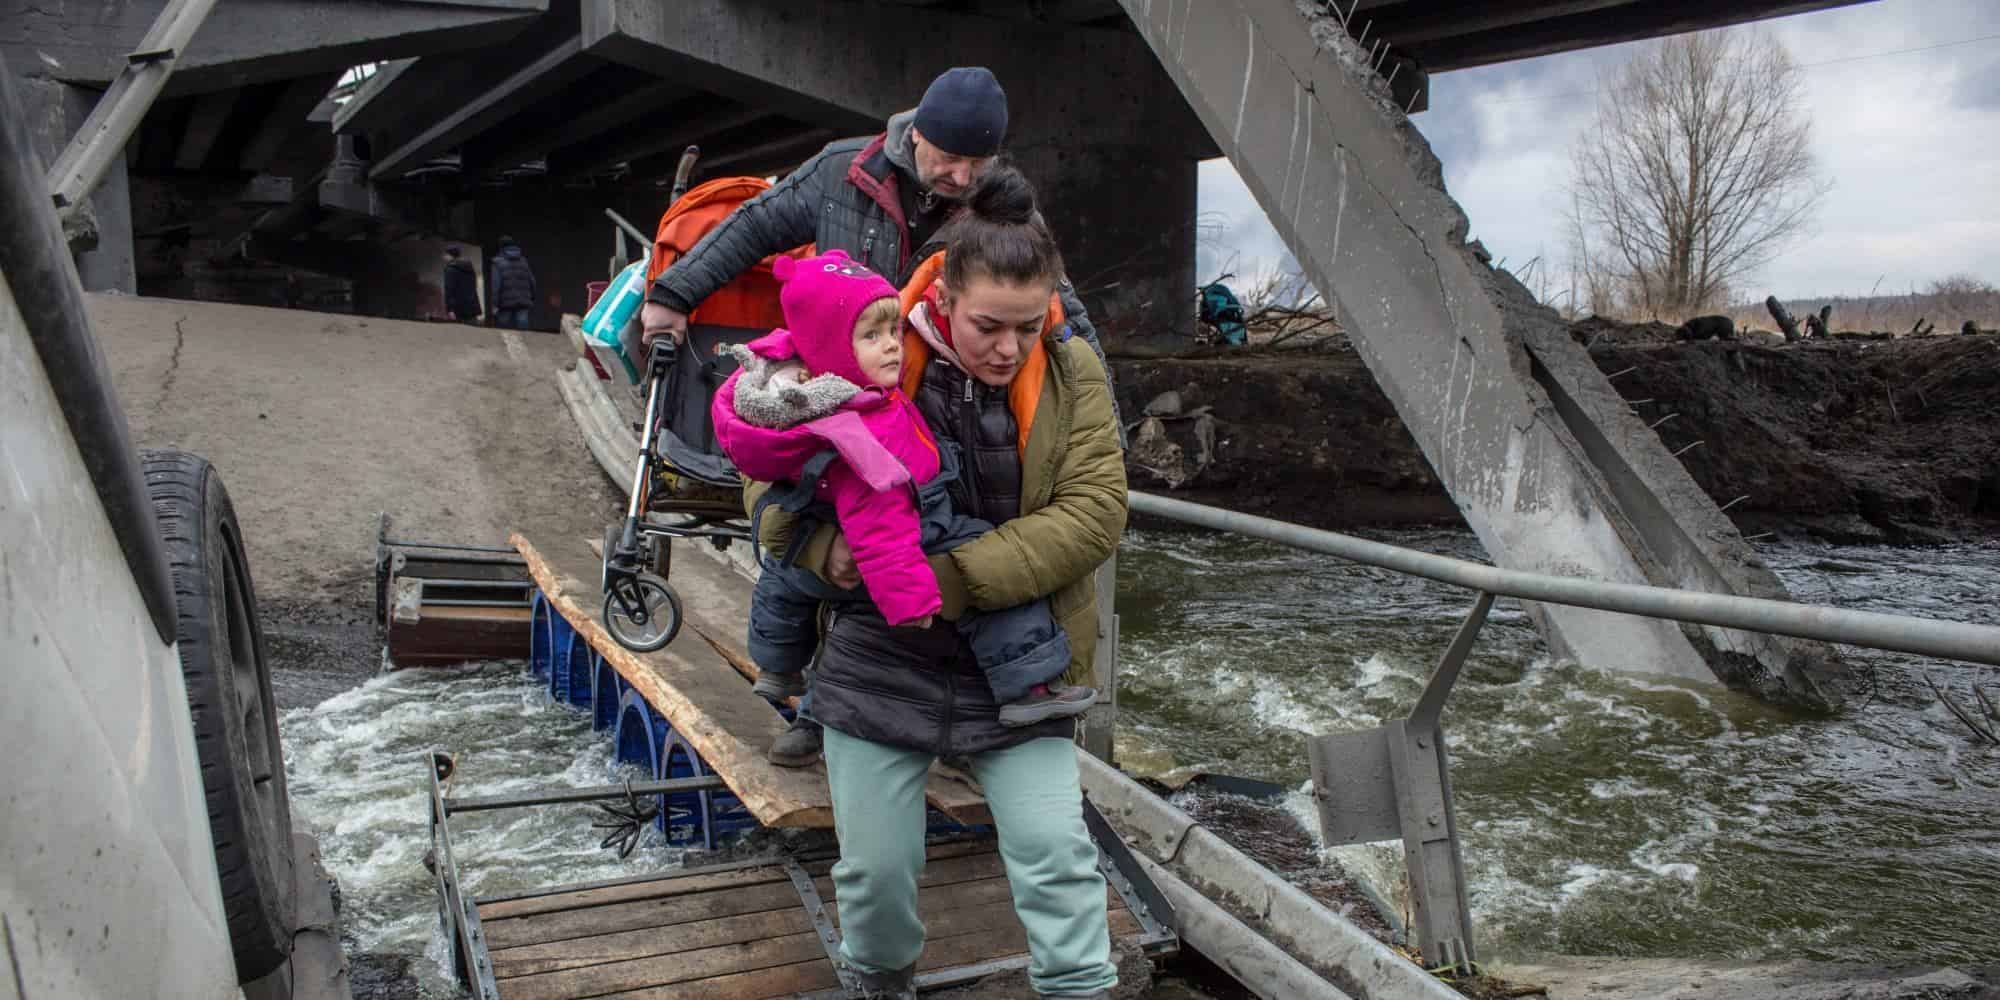 Μητέρα με μωρό στην αγκαλιά προσπαθεί να περάσει σε κατεστραμμένη γέφυρα